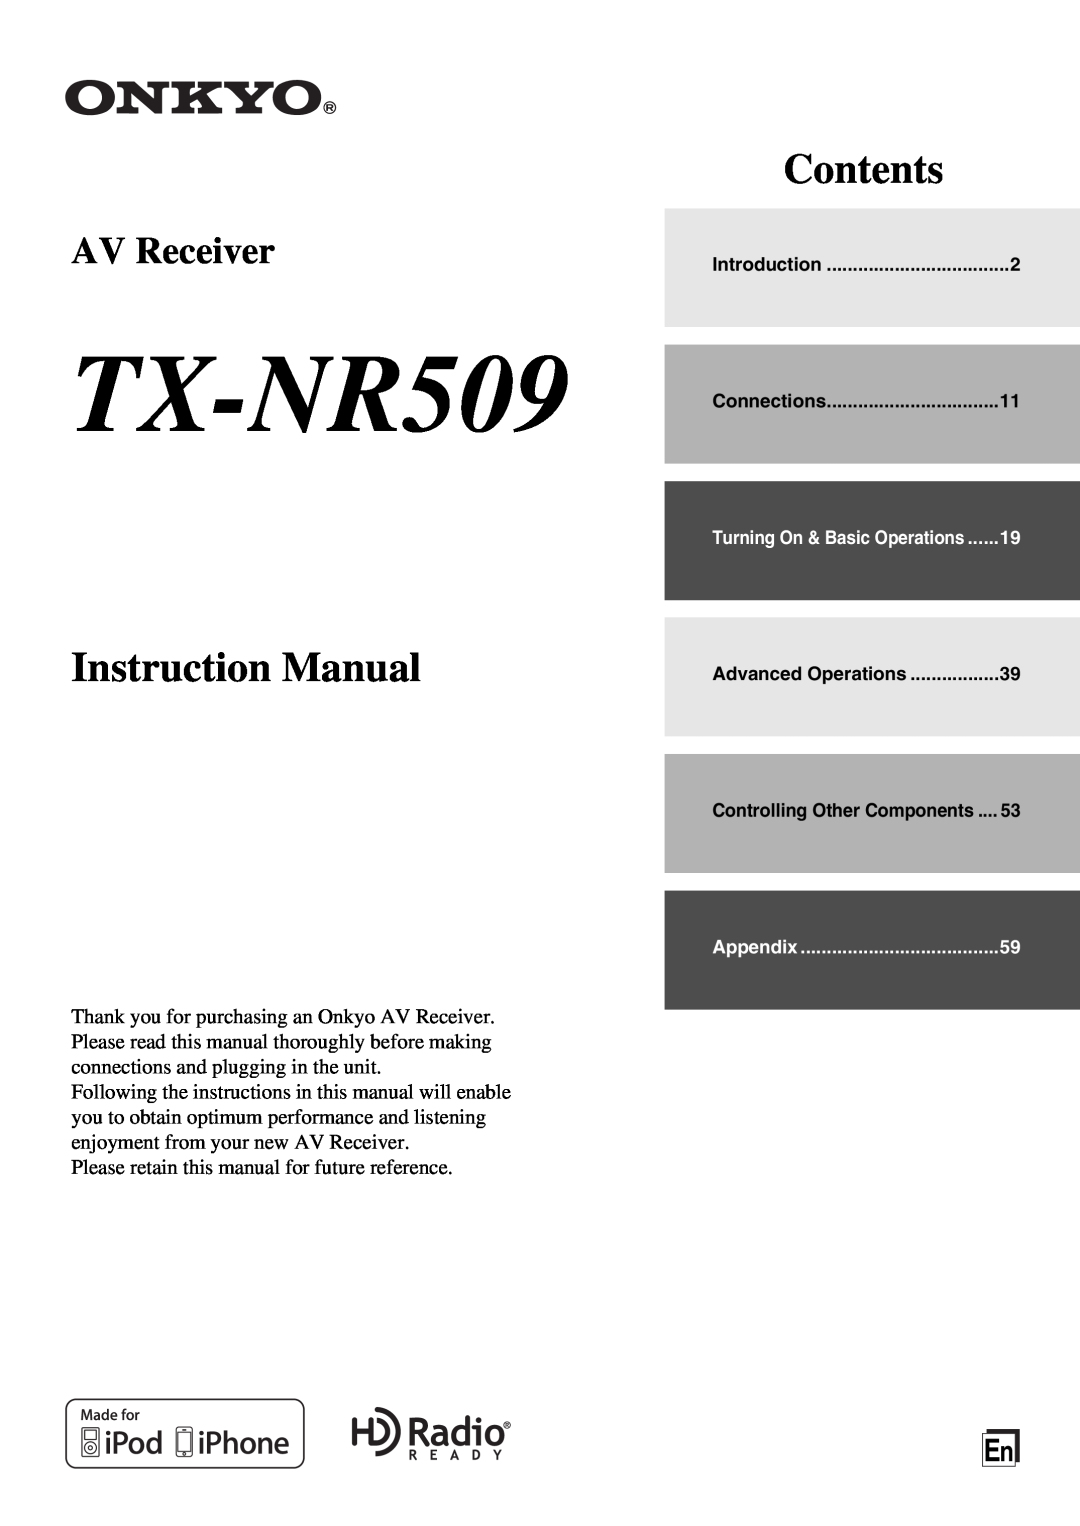 Onkyo TX-NR509 instruction manual Contents, AV Receiver 